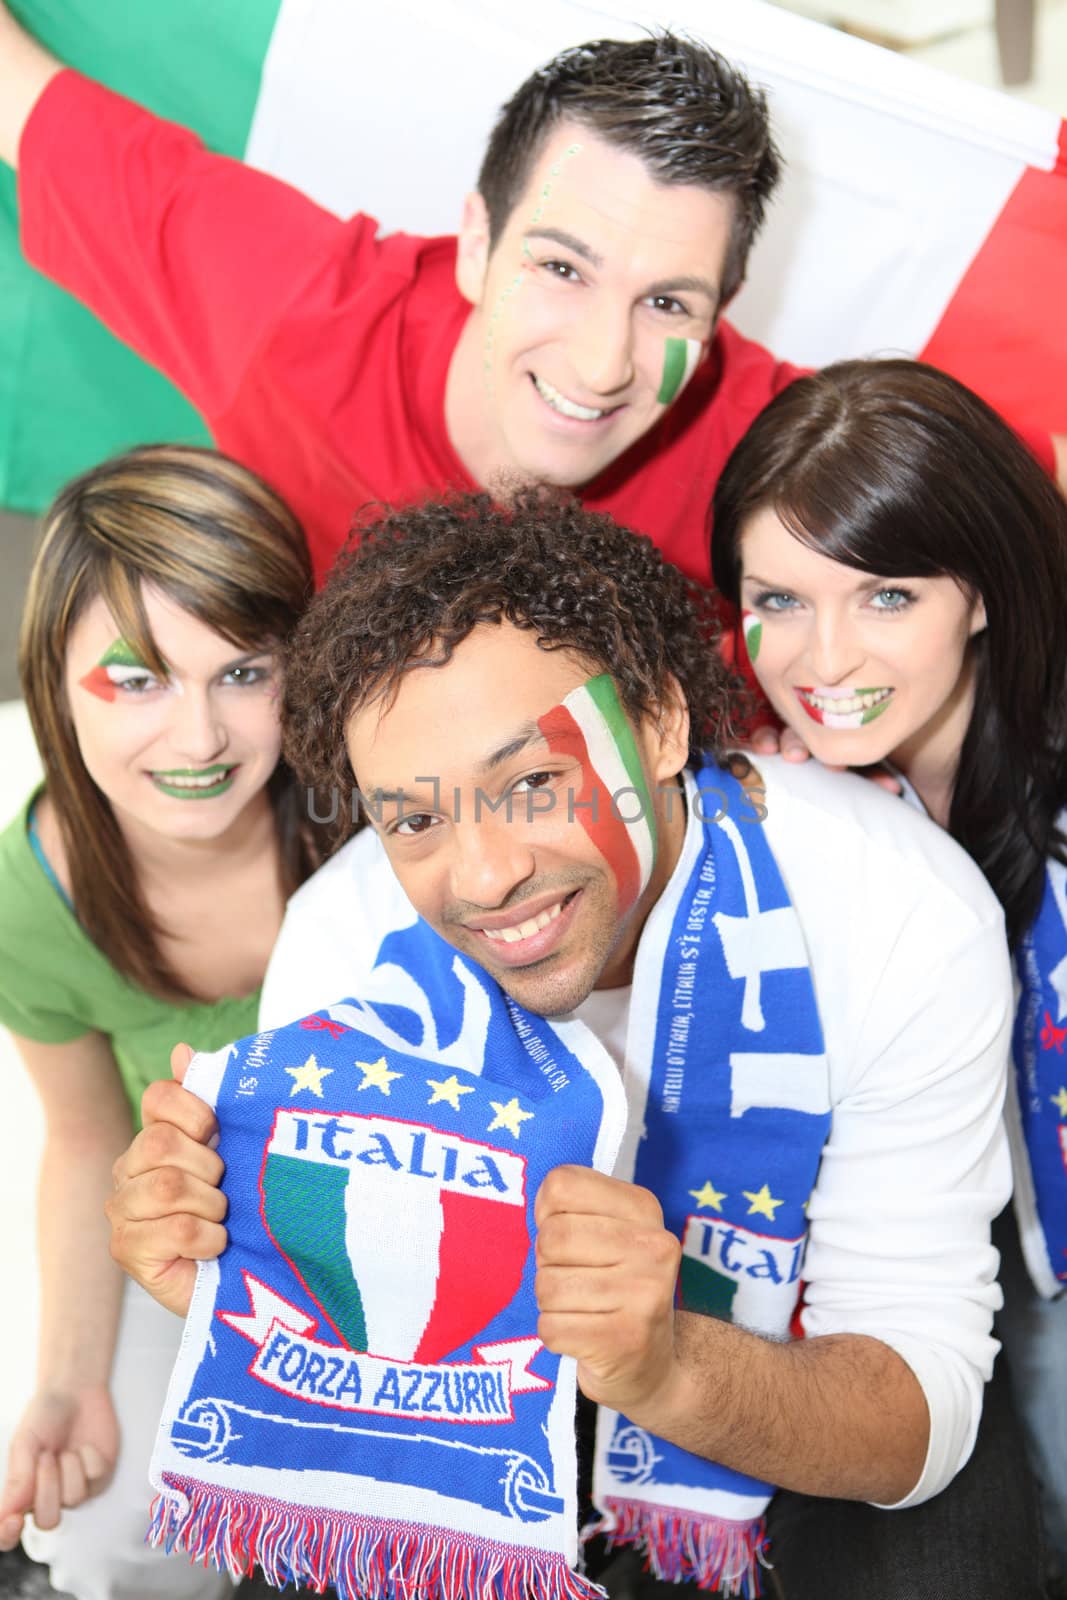 Italian football fans by phovoir